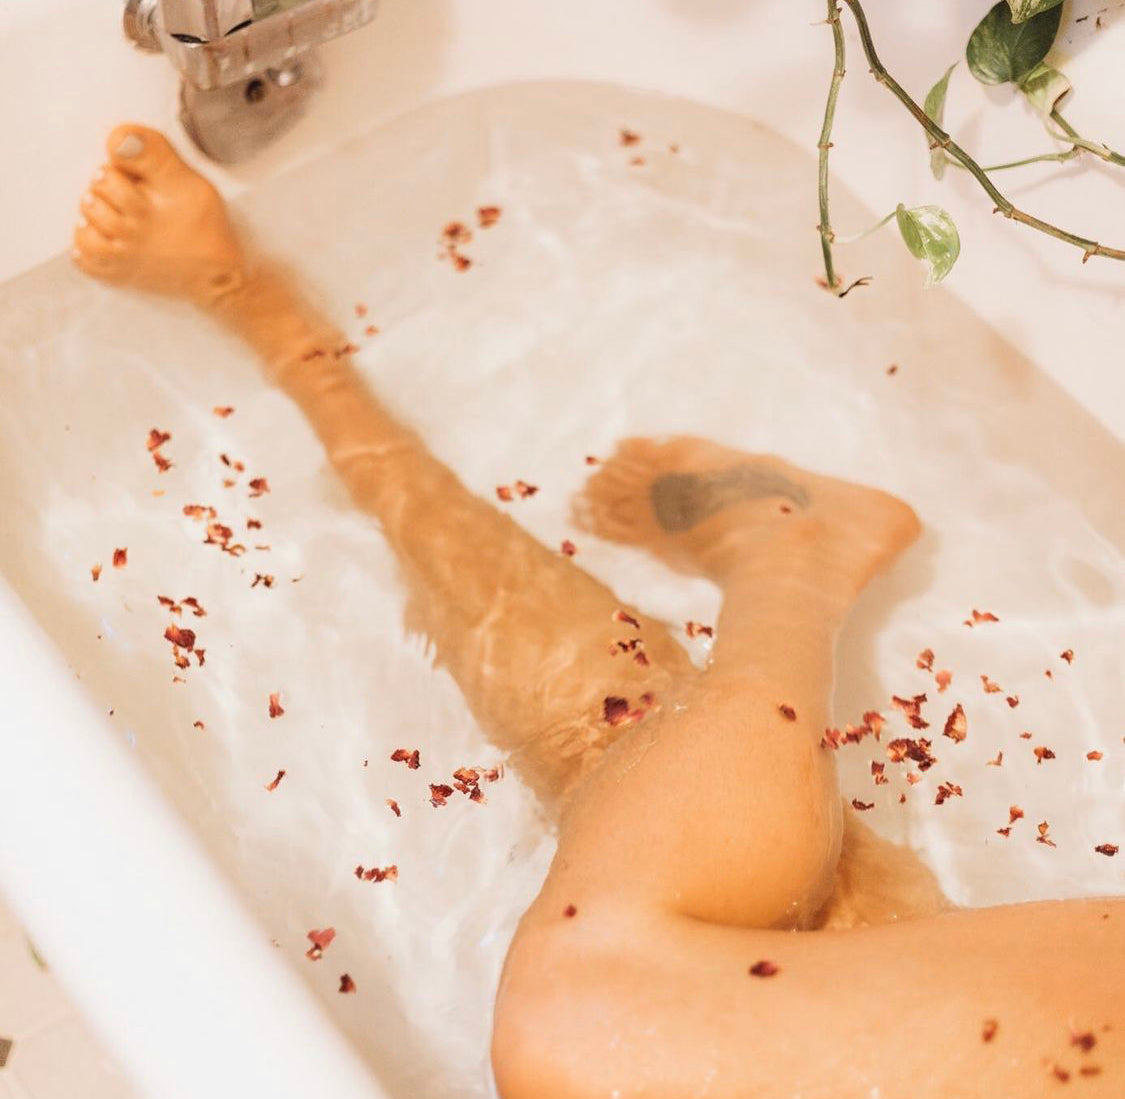 CBD Rose Bath Soak or Body Scrub | Non-Intoxicating